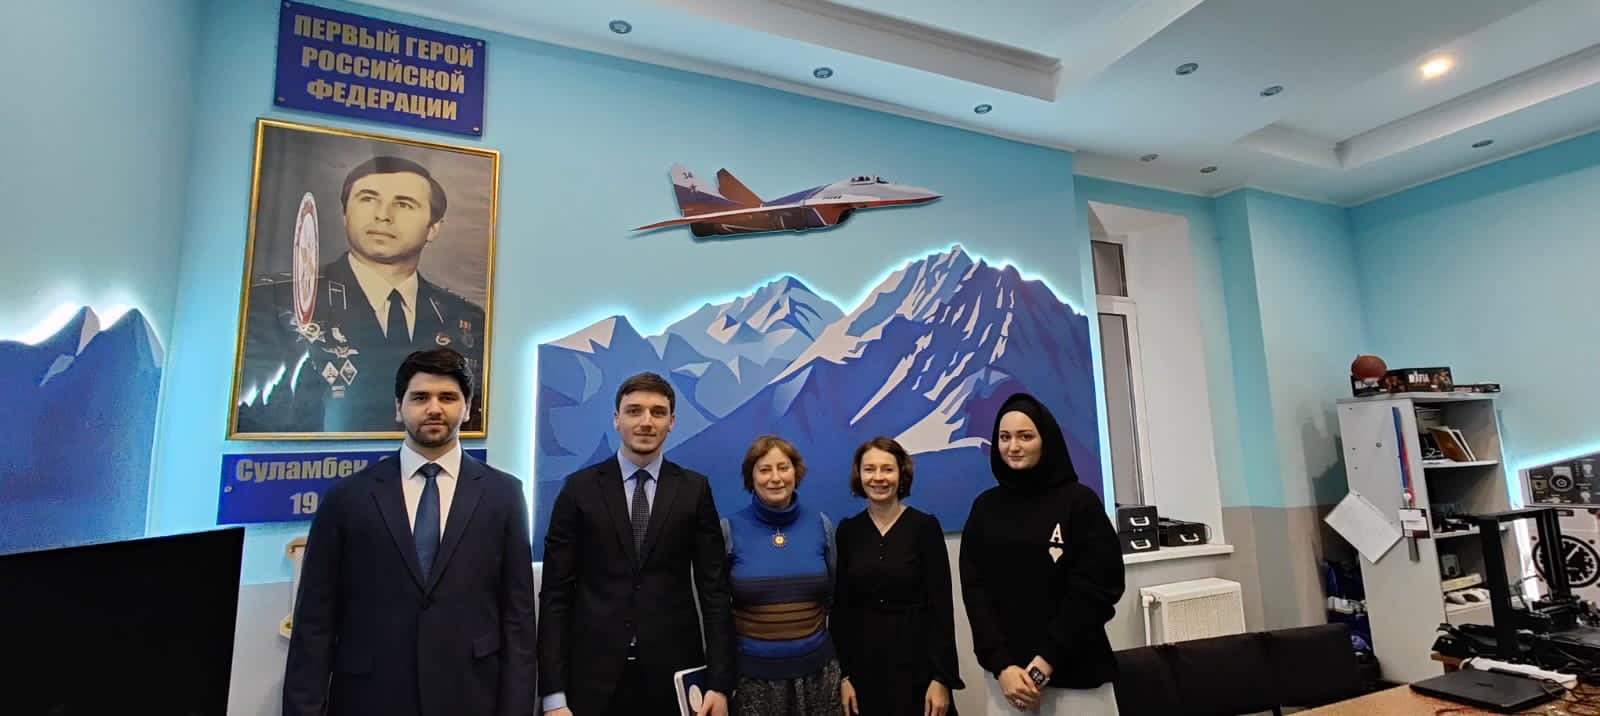 Вечер, посвященный юбилею первого Героя России Суламбека Осканова пройдет в Центральном доме авиации и космонавтики